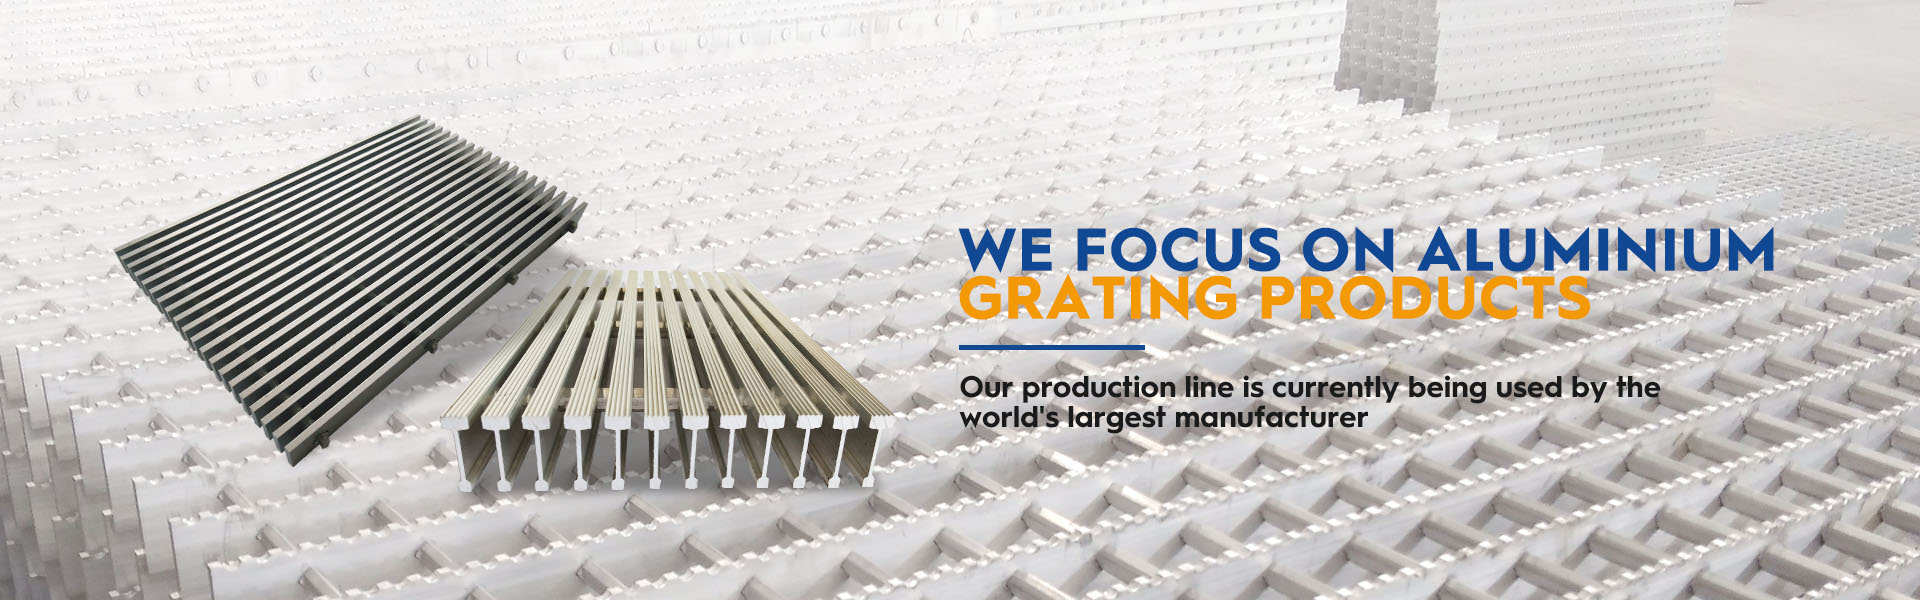 We focus on aluminium grating products